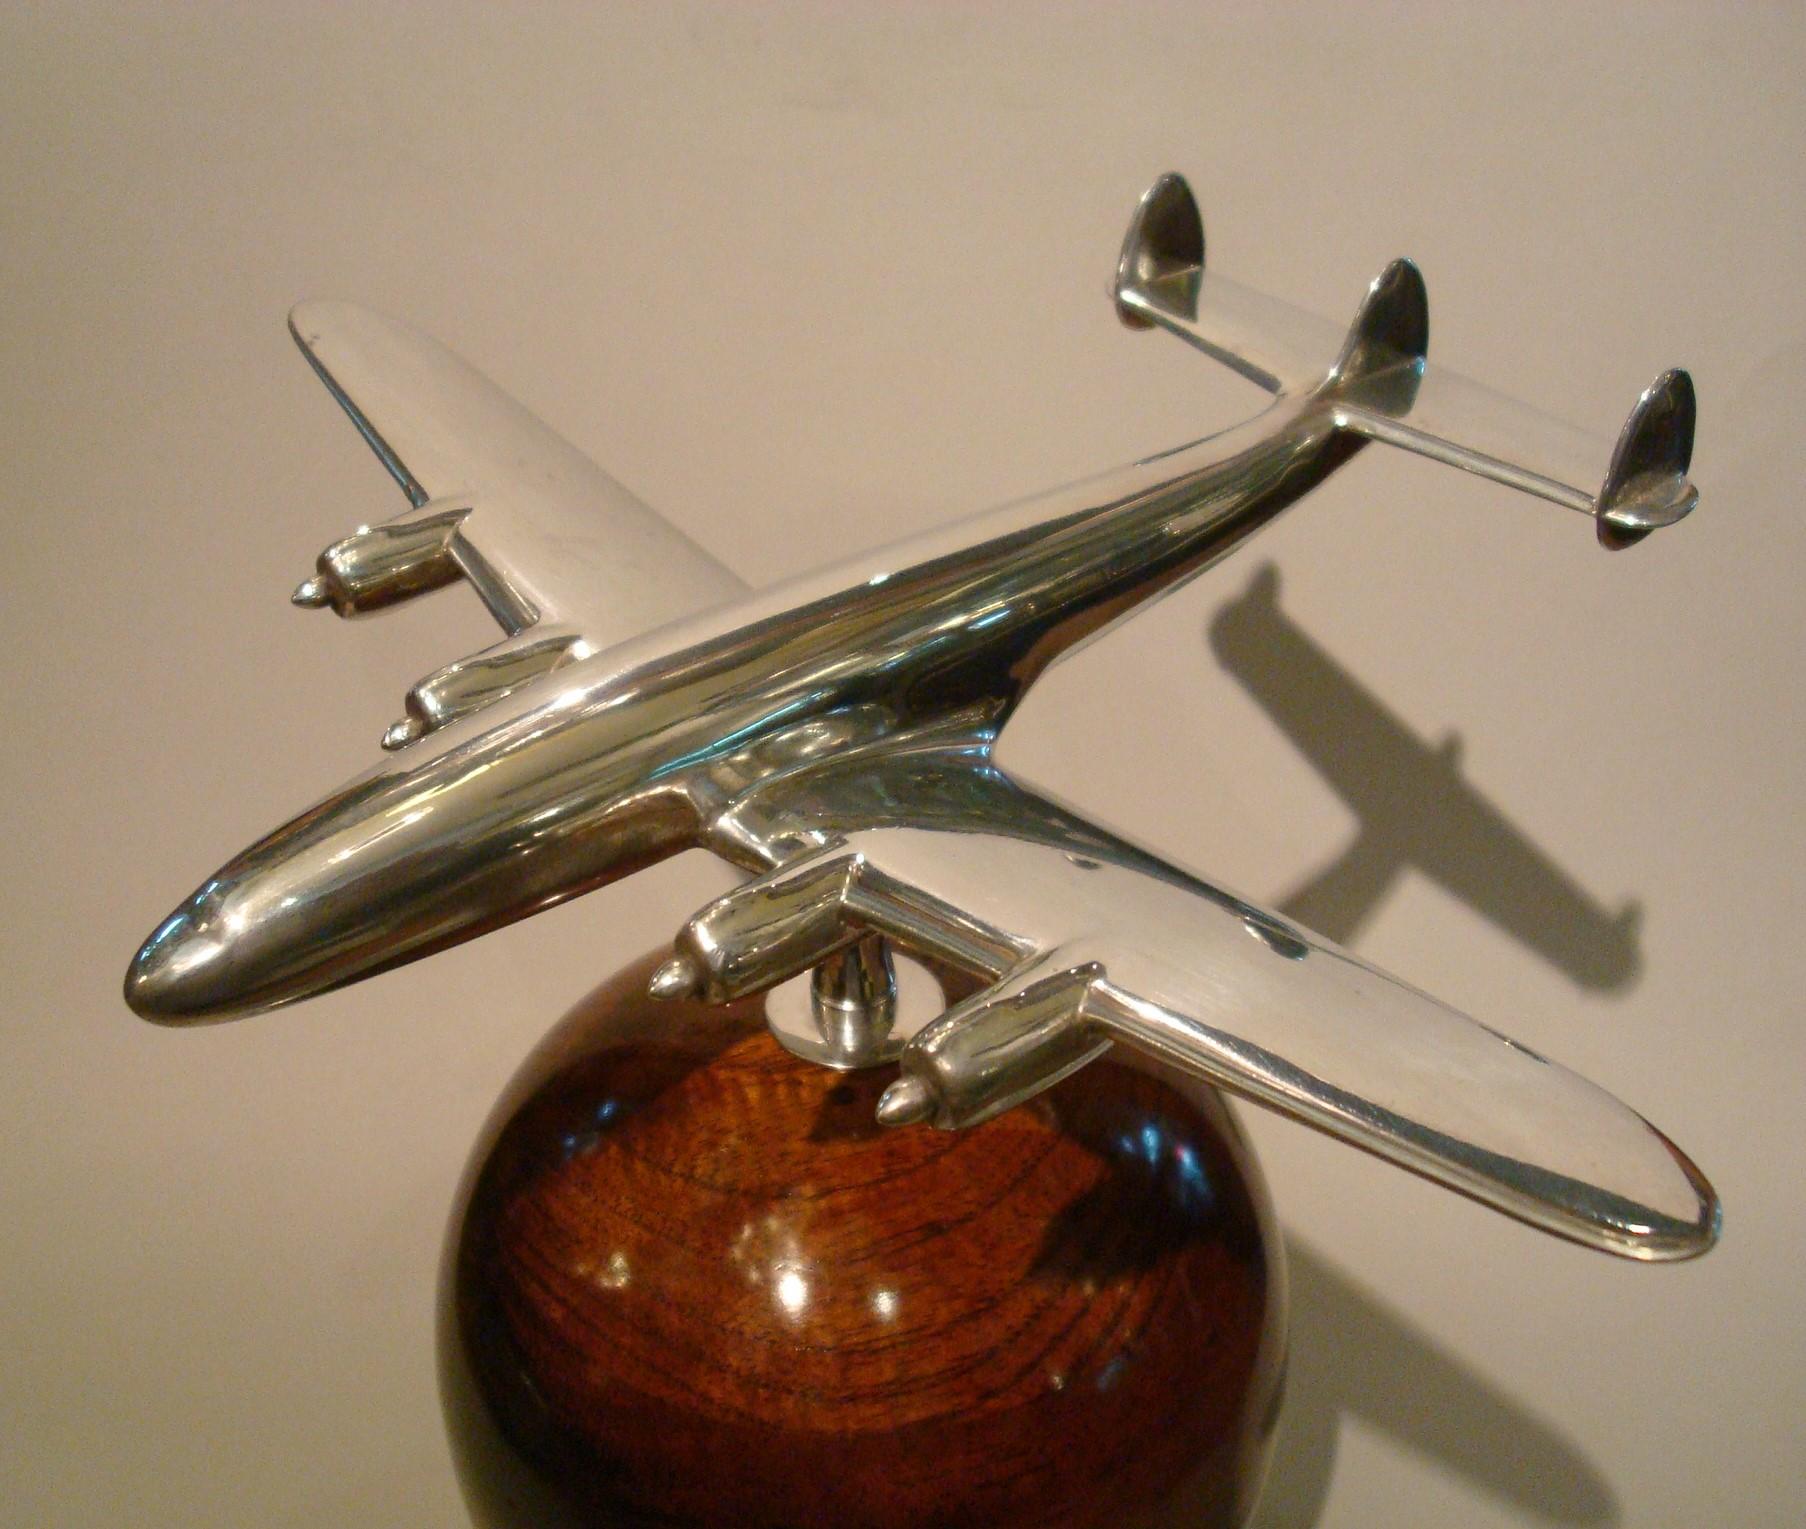 Mid-Century Modern Aviation Lockheed Super Constellation Vintage Desk Airplane Model, circa 1950s